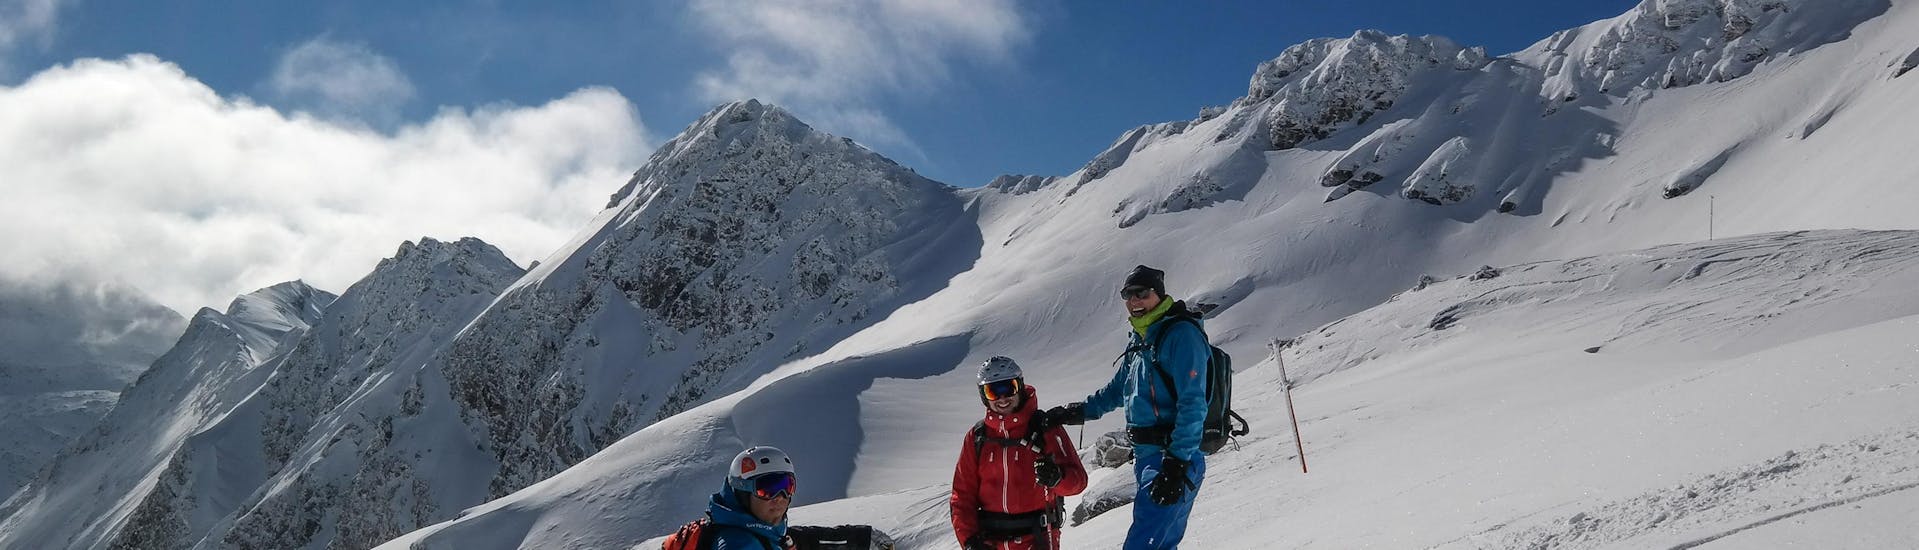 Privé-skigids voor alle niveaus met Ski School Snowsports Gastein.